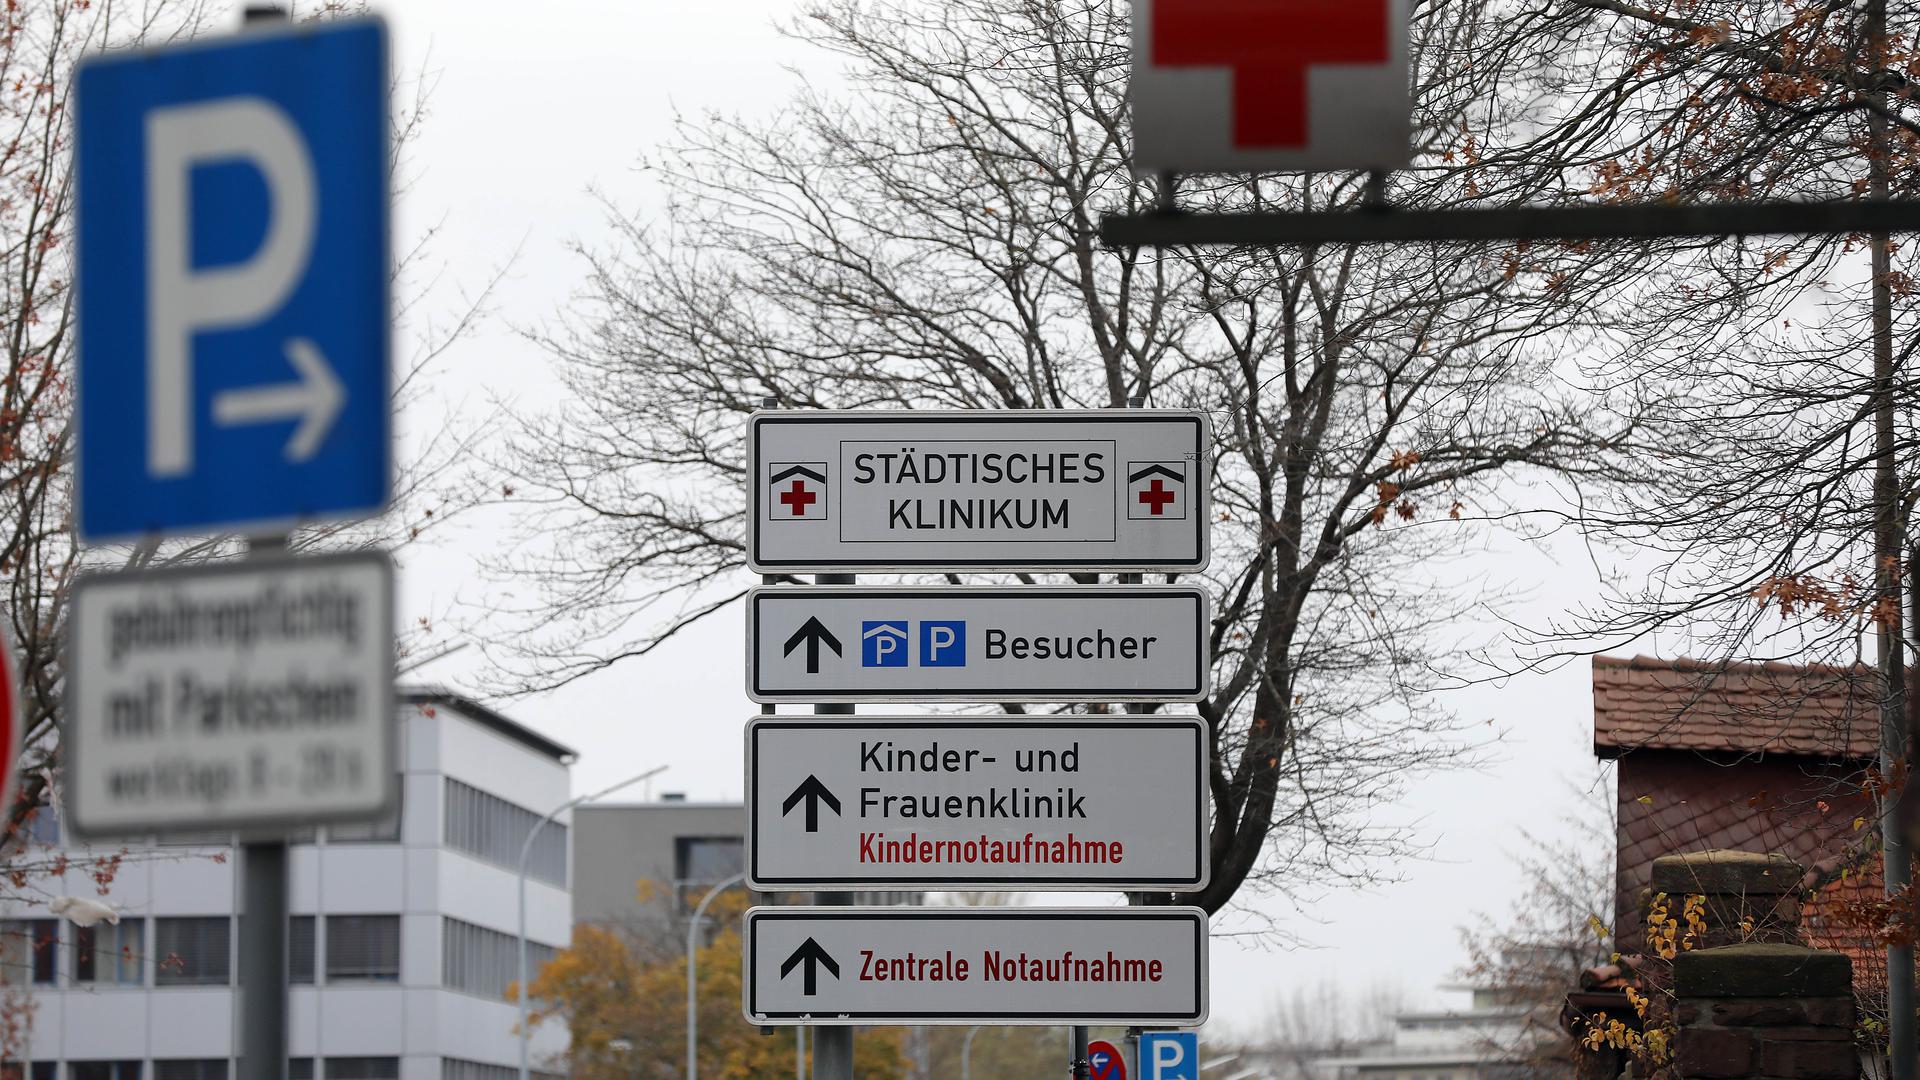 Gegenstand von Kritik: Über das Städtische Klinikum Karlsruhe ist am Wochenende ein Shitstorm hereingebrochen, nachdem ein Video eines vermeintlich leidenden Patienten ins Internet gestellt wurde.